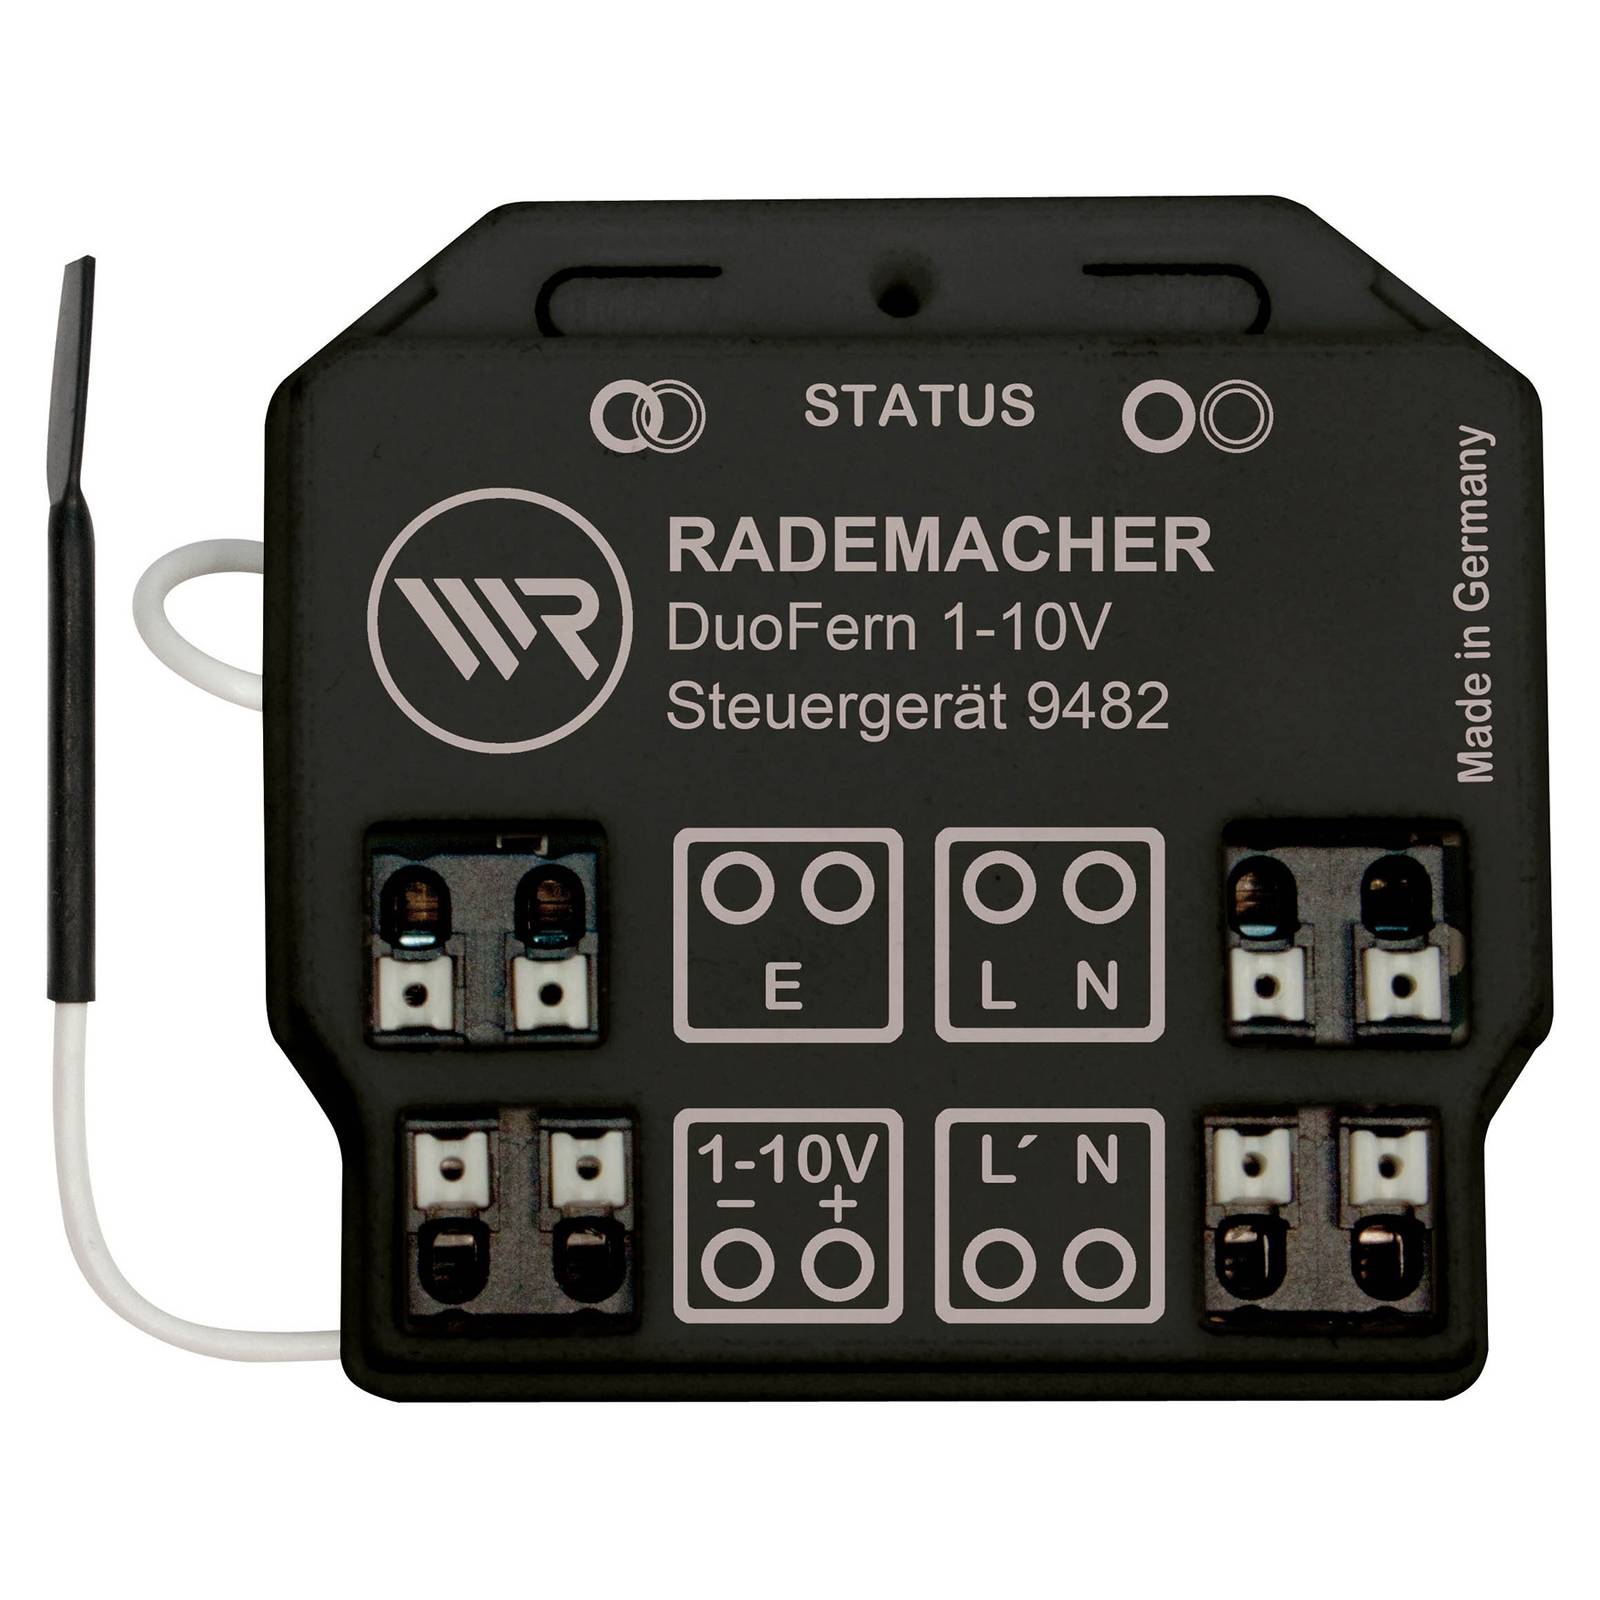 Rademacher DuoFern 1-10 V Steuergerät Dimmaktor